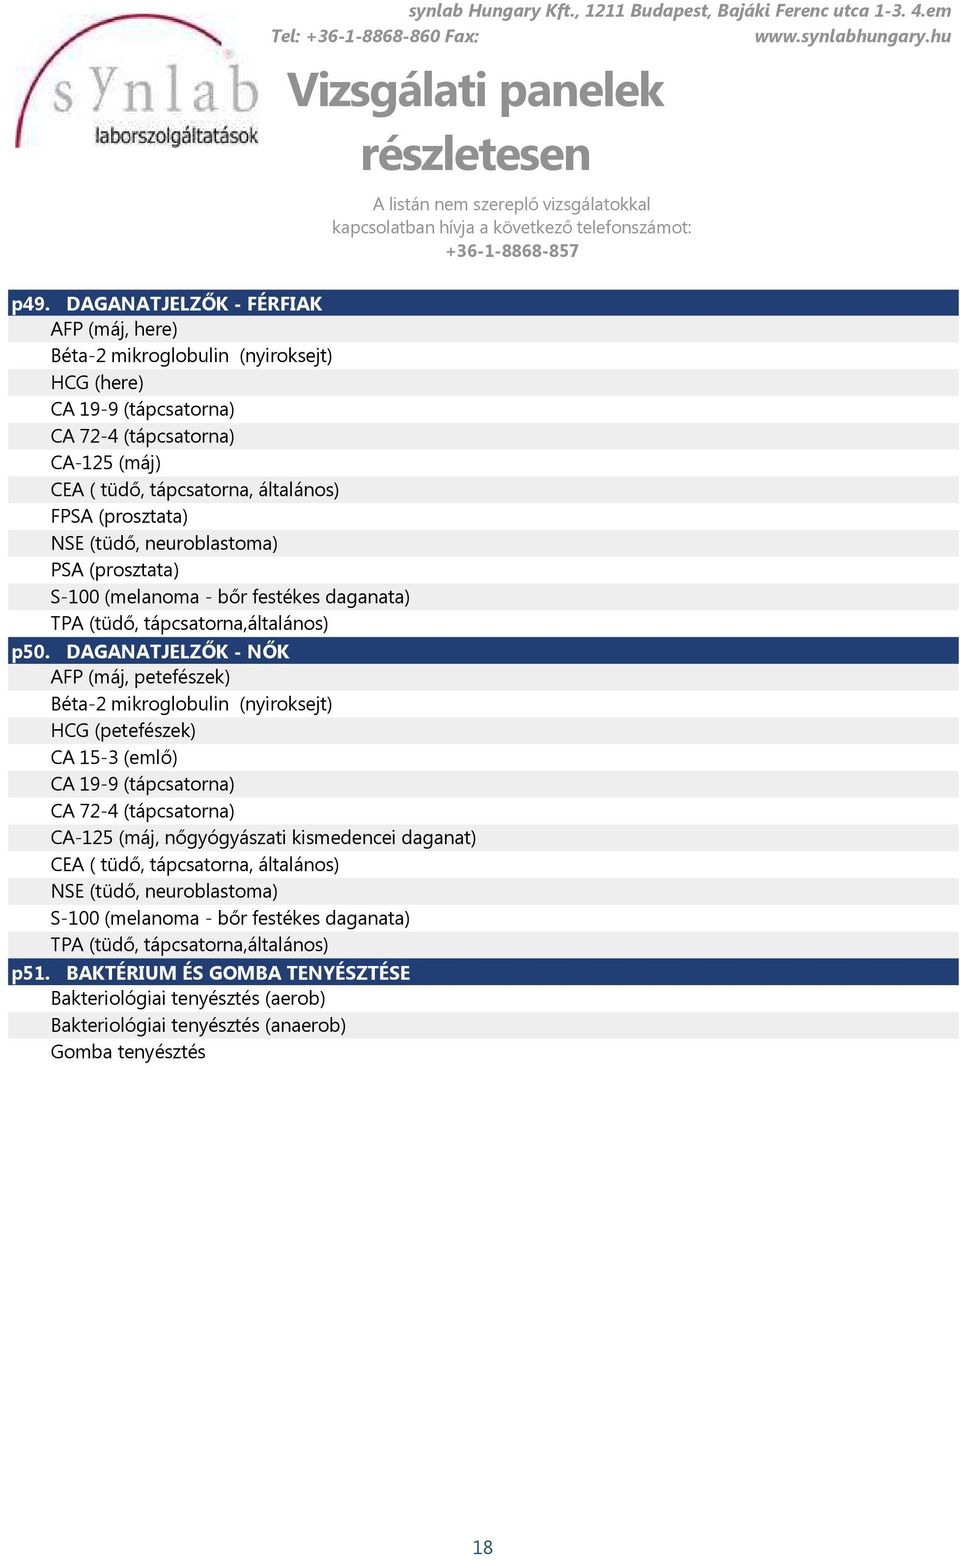 DAGANATJELZŐK - NŐK AFP (máj, petefészek) Béta-2 mikroglobulin (nyiroksejt) HCG (petefészek) CA 15-3 (emlő) CA 19-9 (tápcsatorna) CA 72-4 (tápcsatorna) CA-125 (máj, nőgyógyászati kismedencei